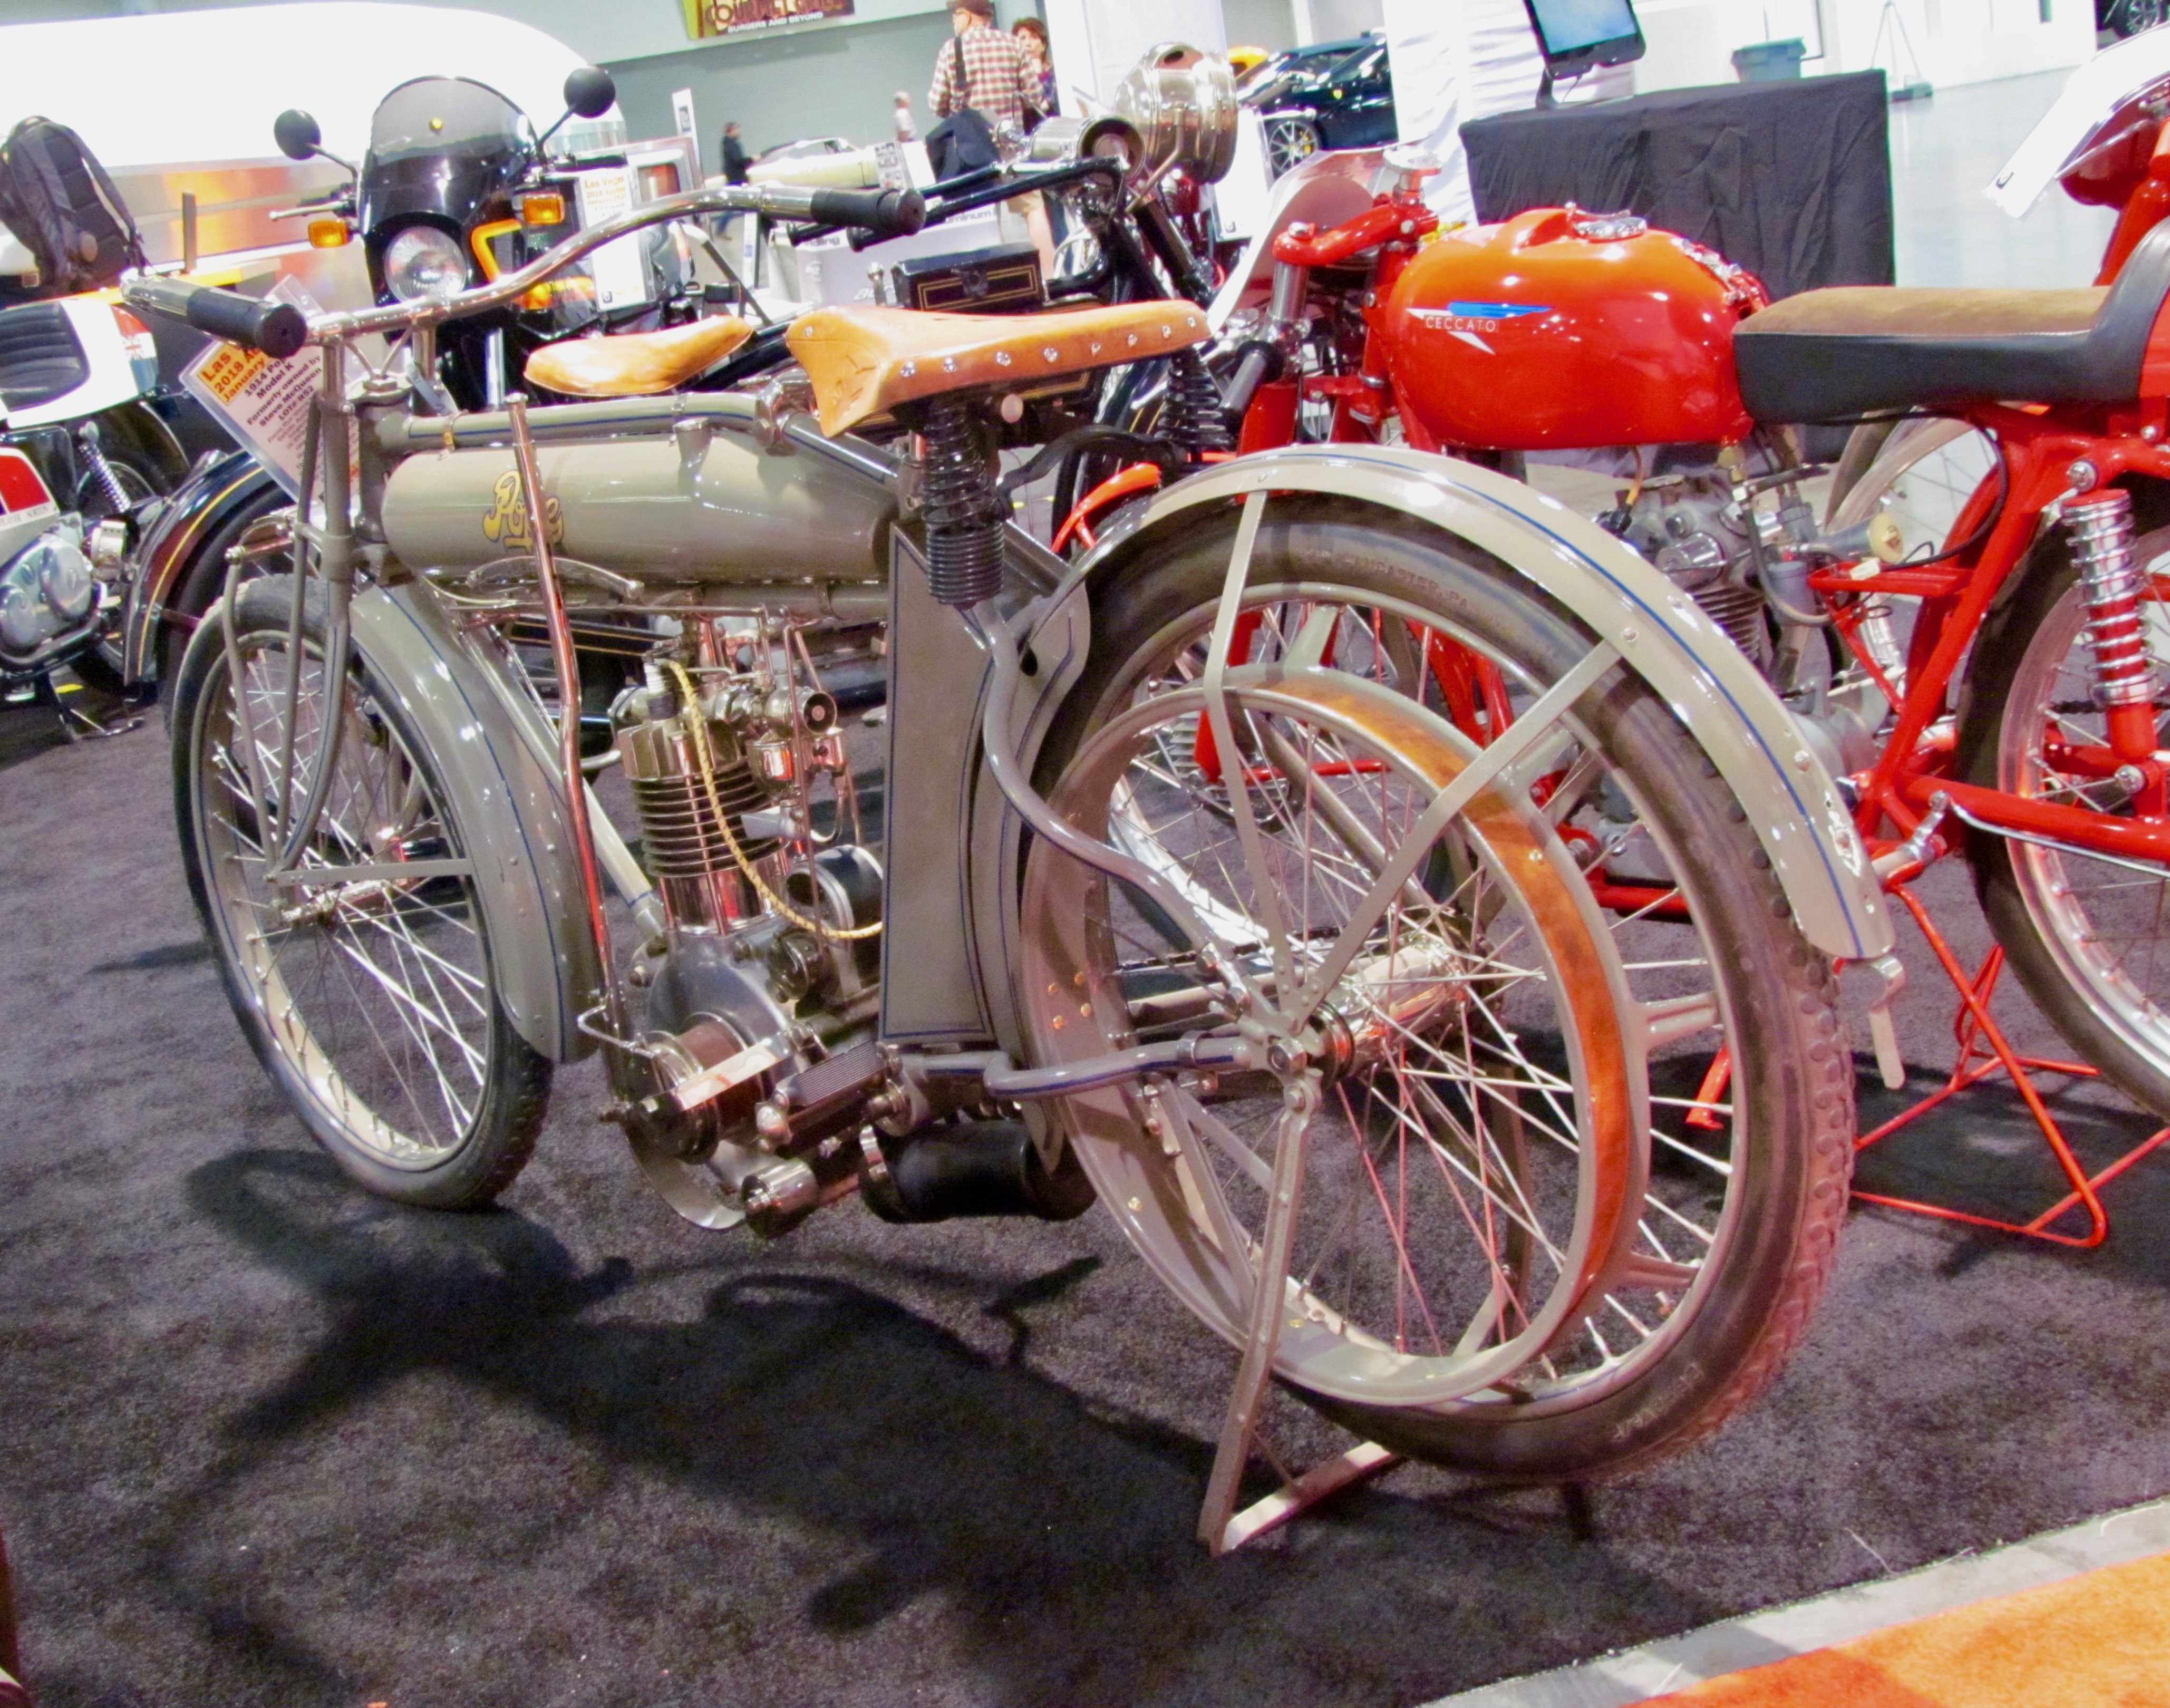 , More auction action: Mecum, Bonhams gear up for Las Vegas motorcycle sales, ClassicCars.com Journal